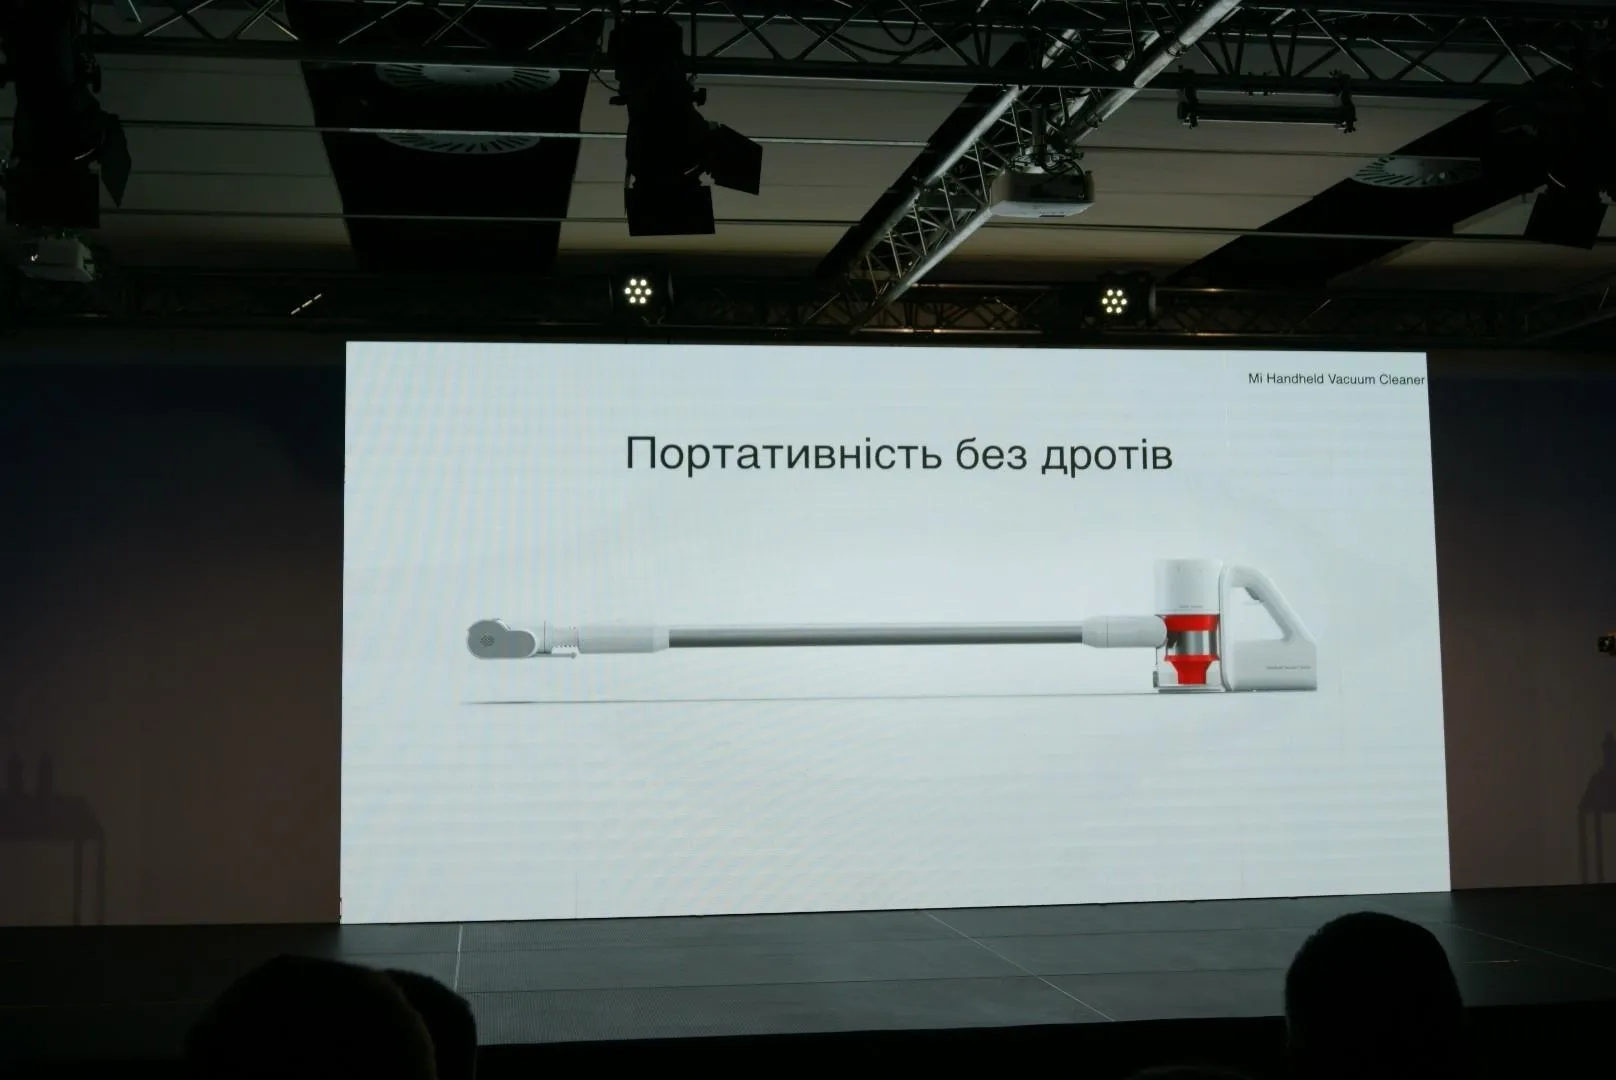 Xiaomi Mi Handheld Vacuum Cleaner